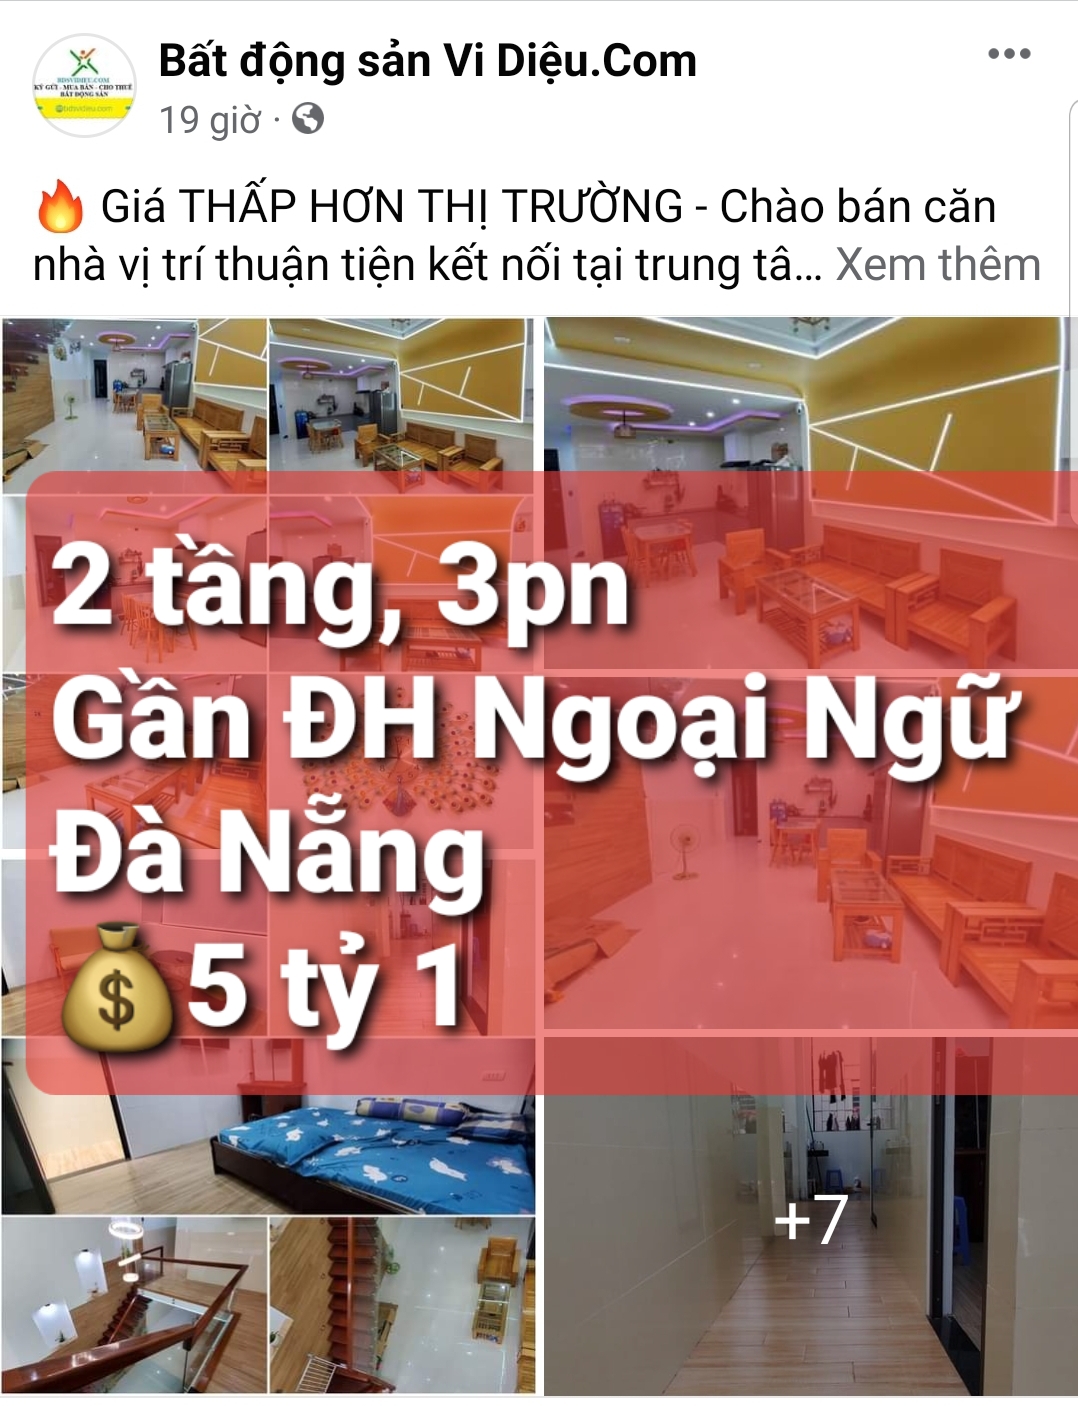 Giá THẤP HƠN THỊ TRƯỜNG – Chào bán căn nhà vị trí thuận tiện kết nối tại trung tâm Thành phố Đà Nẵng